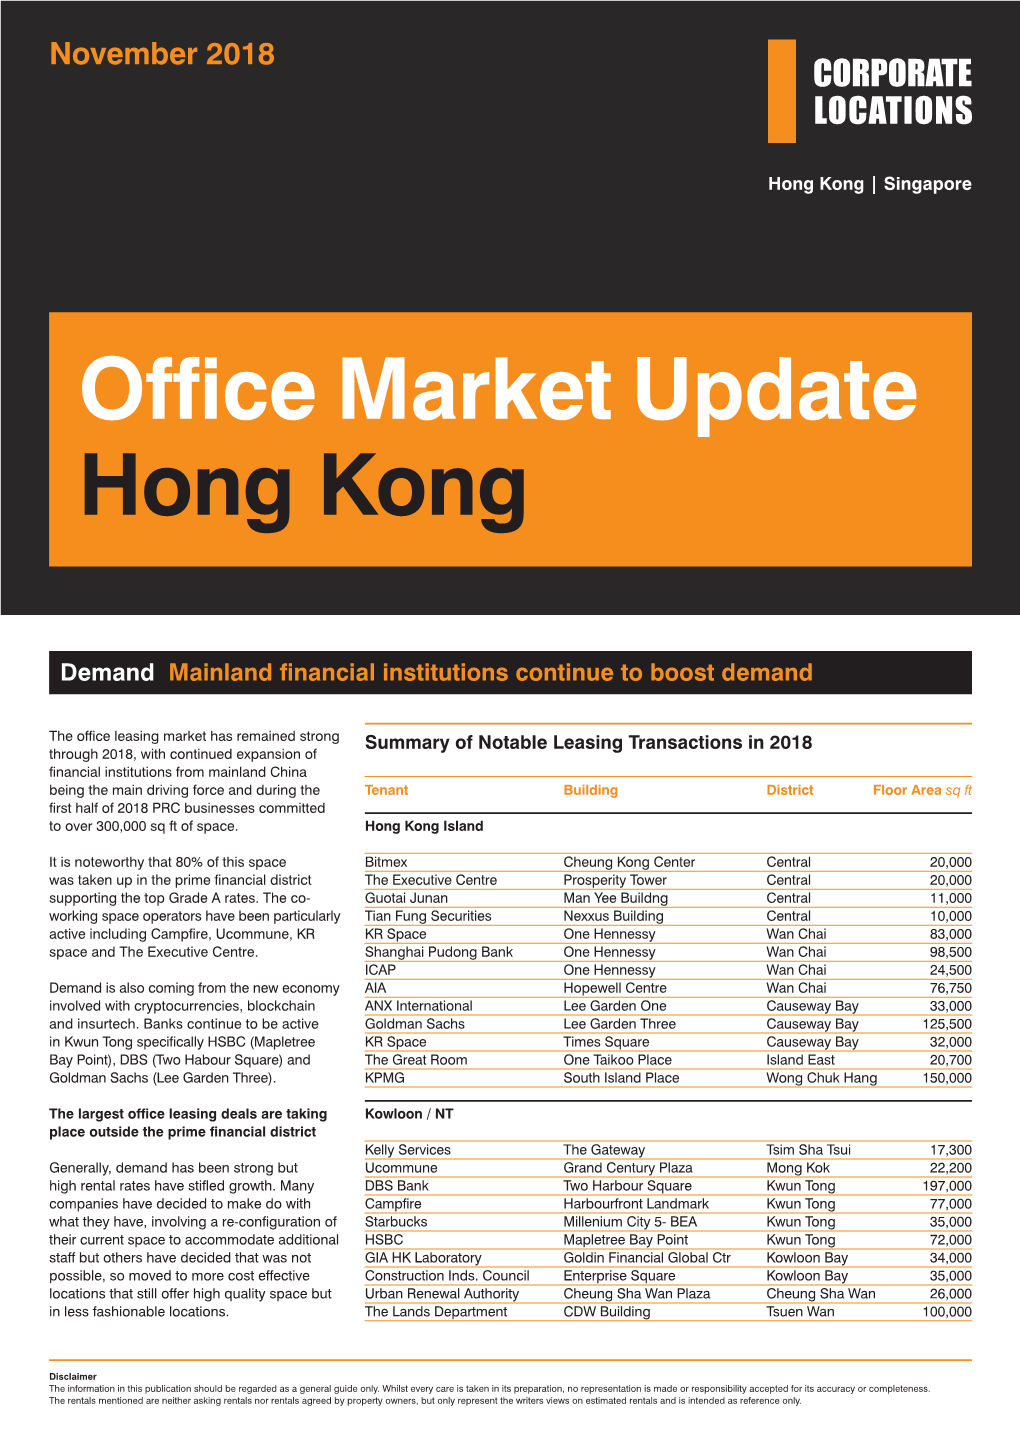 Office Market Update Hong Kong